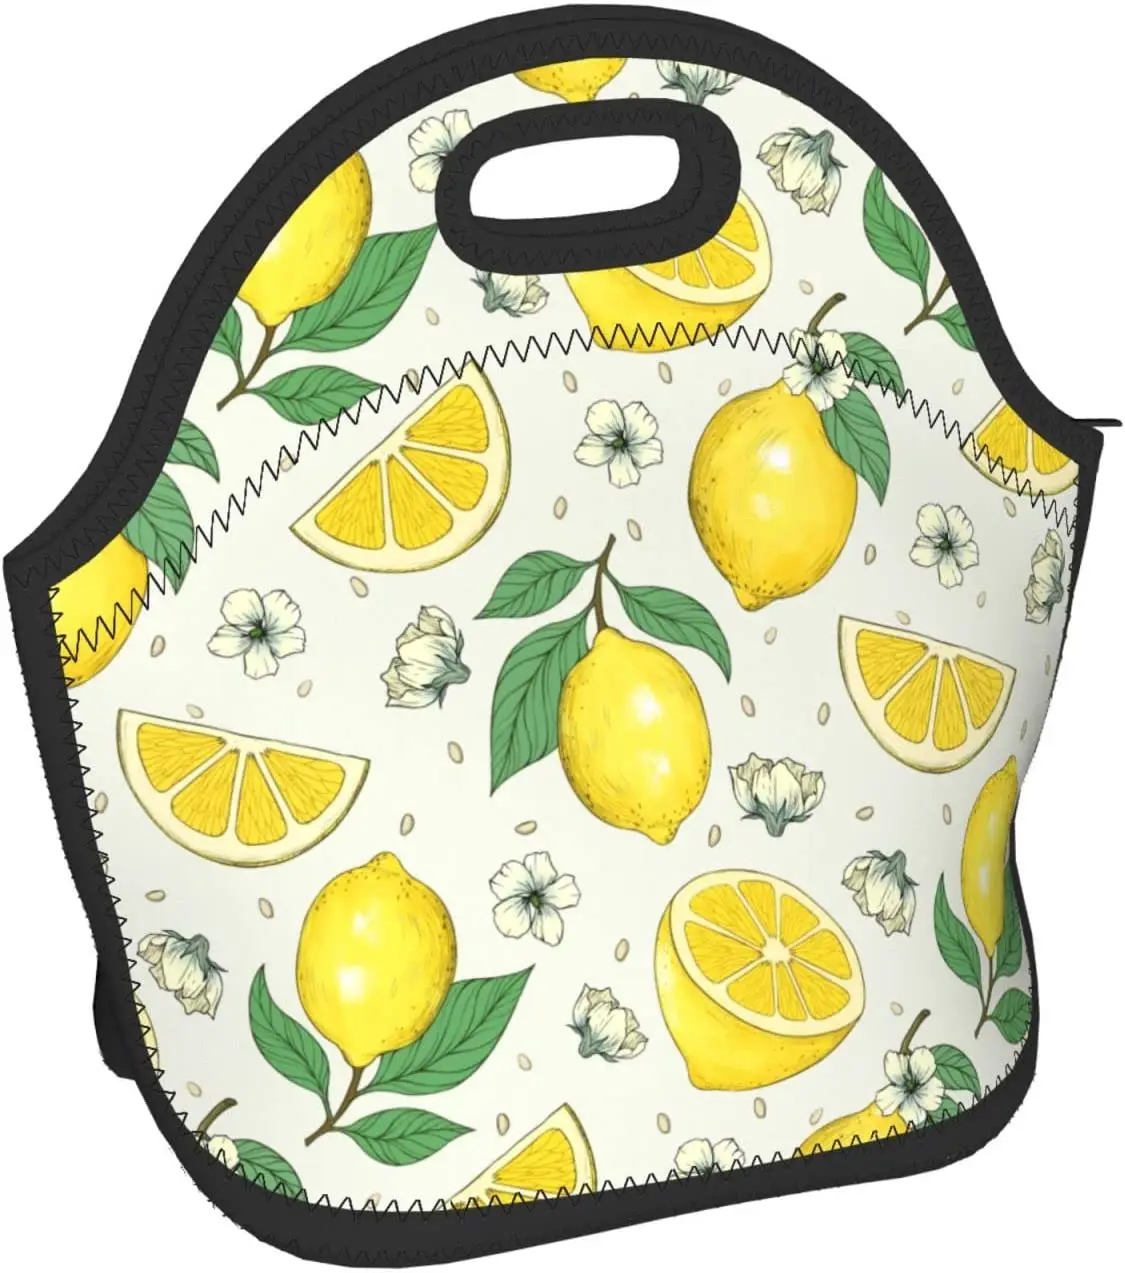 Lemons Изолированная неопреновая сумка для ланча, сумки для ланча, Переносной ланч-бокс, сумка-холодильник для ланча, сумка для пикника/катания на лодках/рыбалки/работы 1